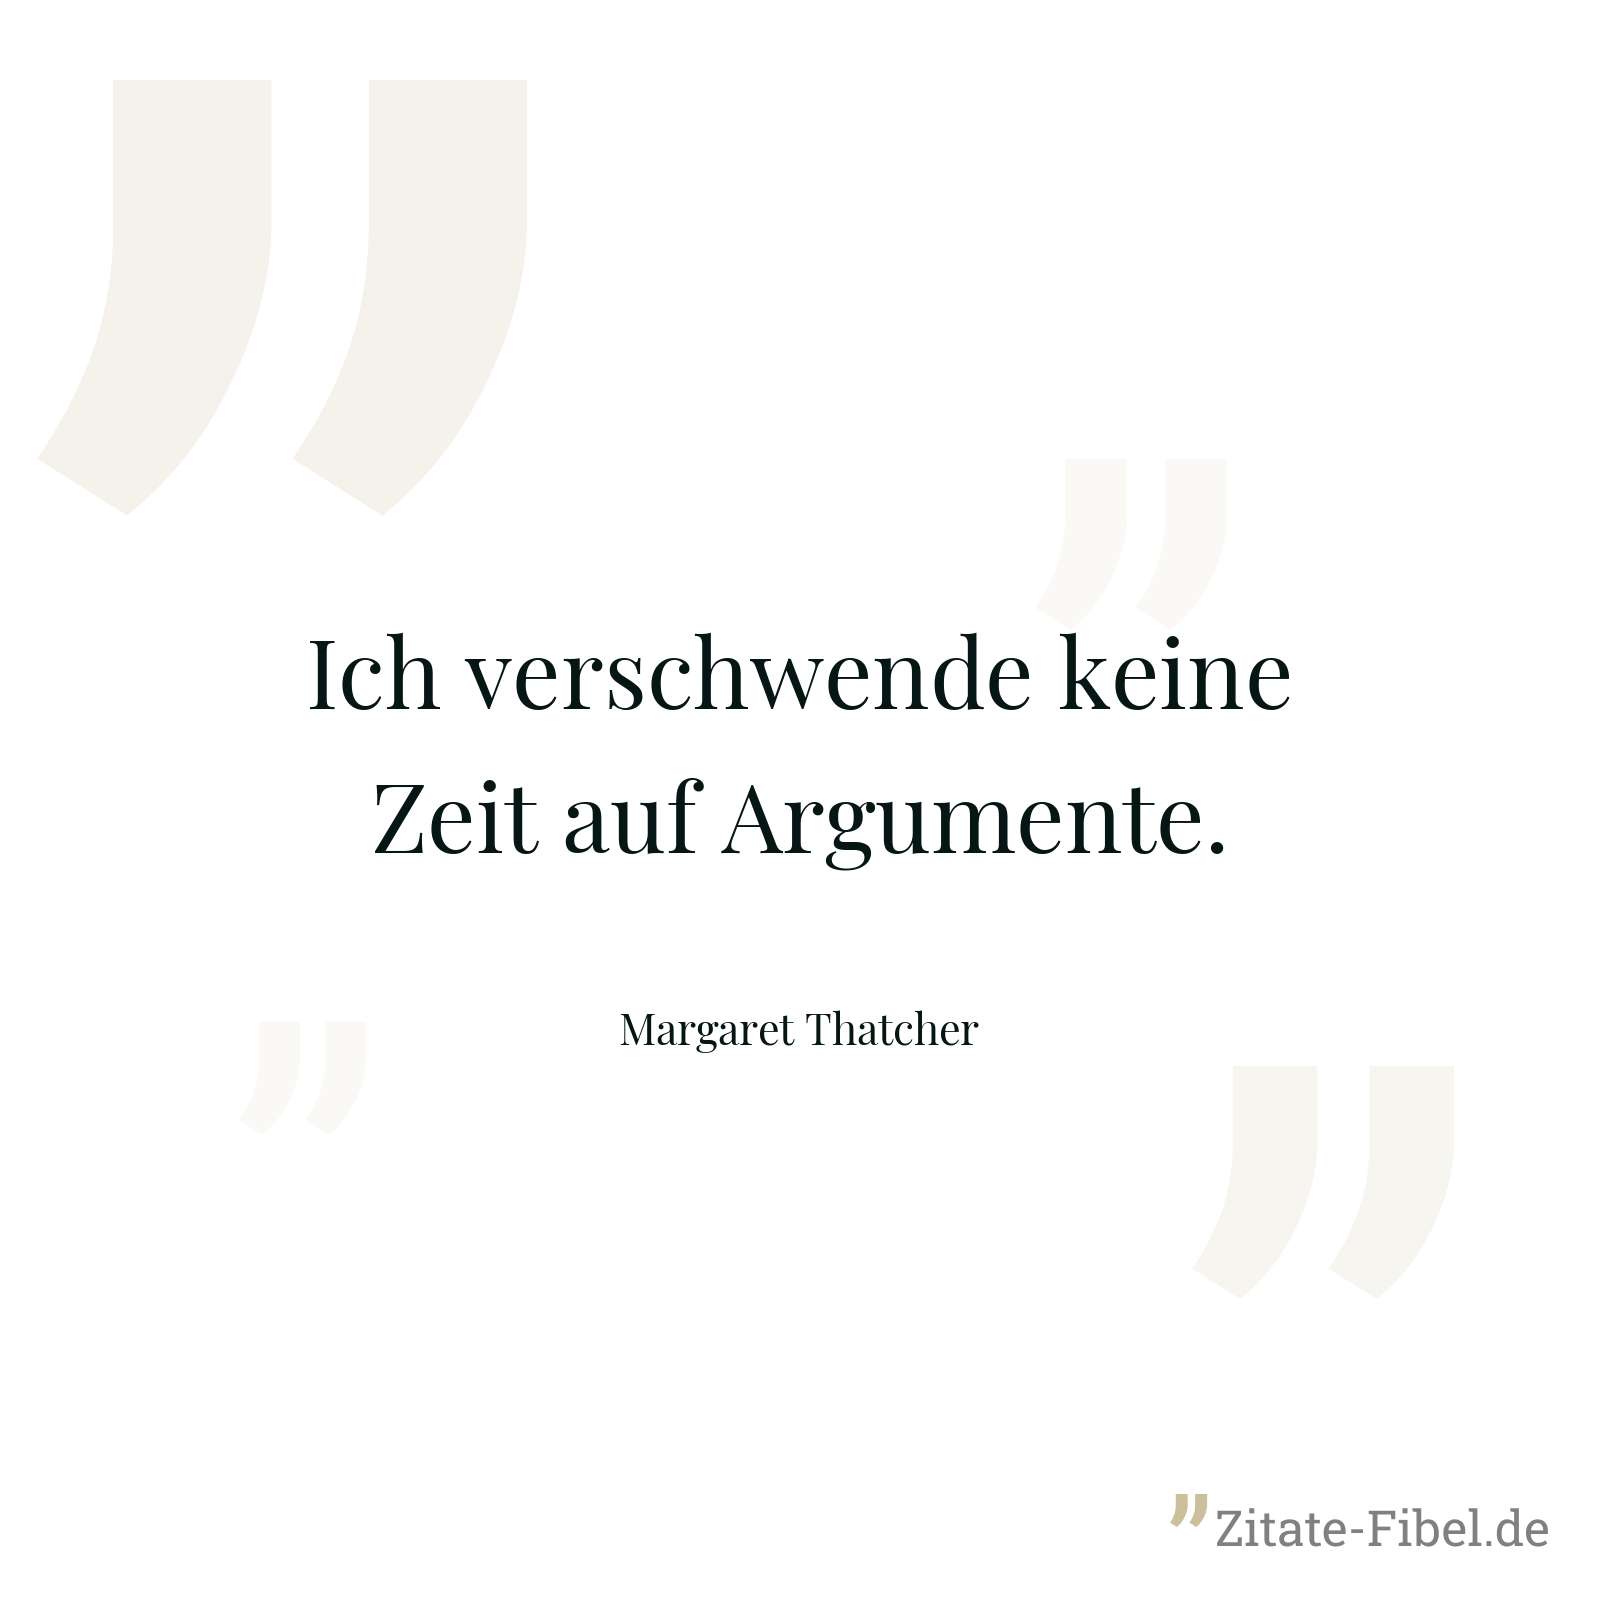 Ich verschwende keine Zeit auf Argumente. - Margaret Thatcher